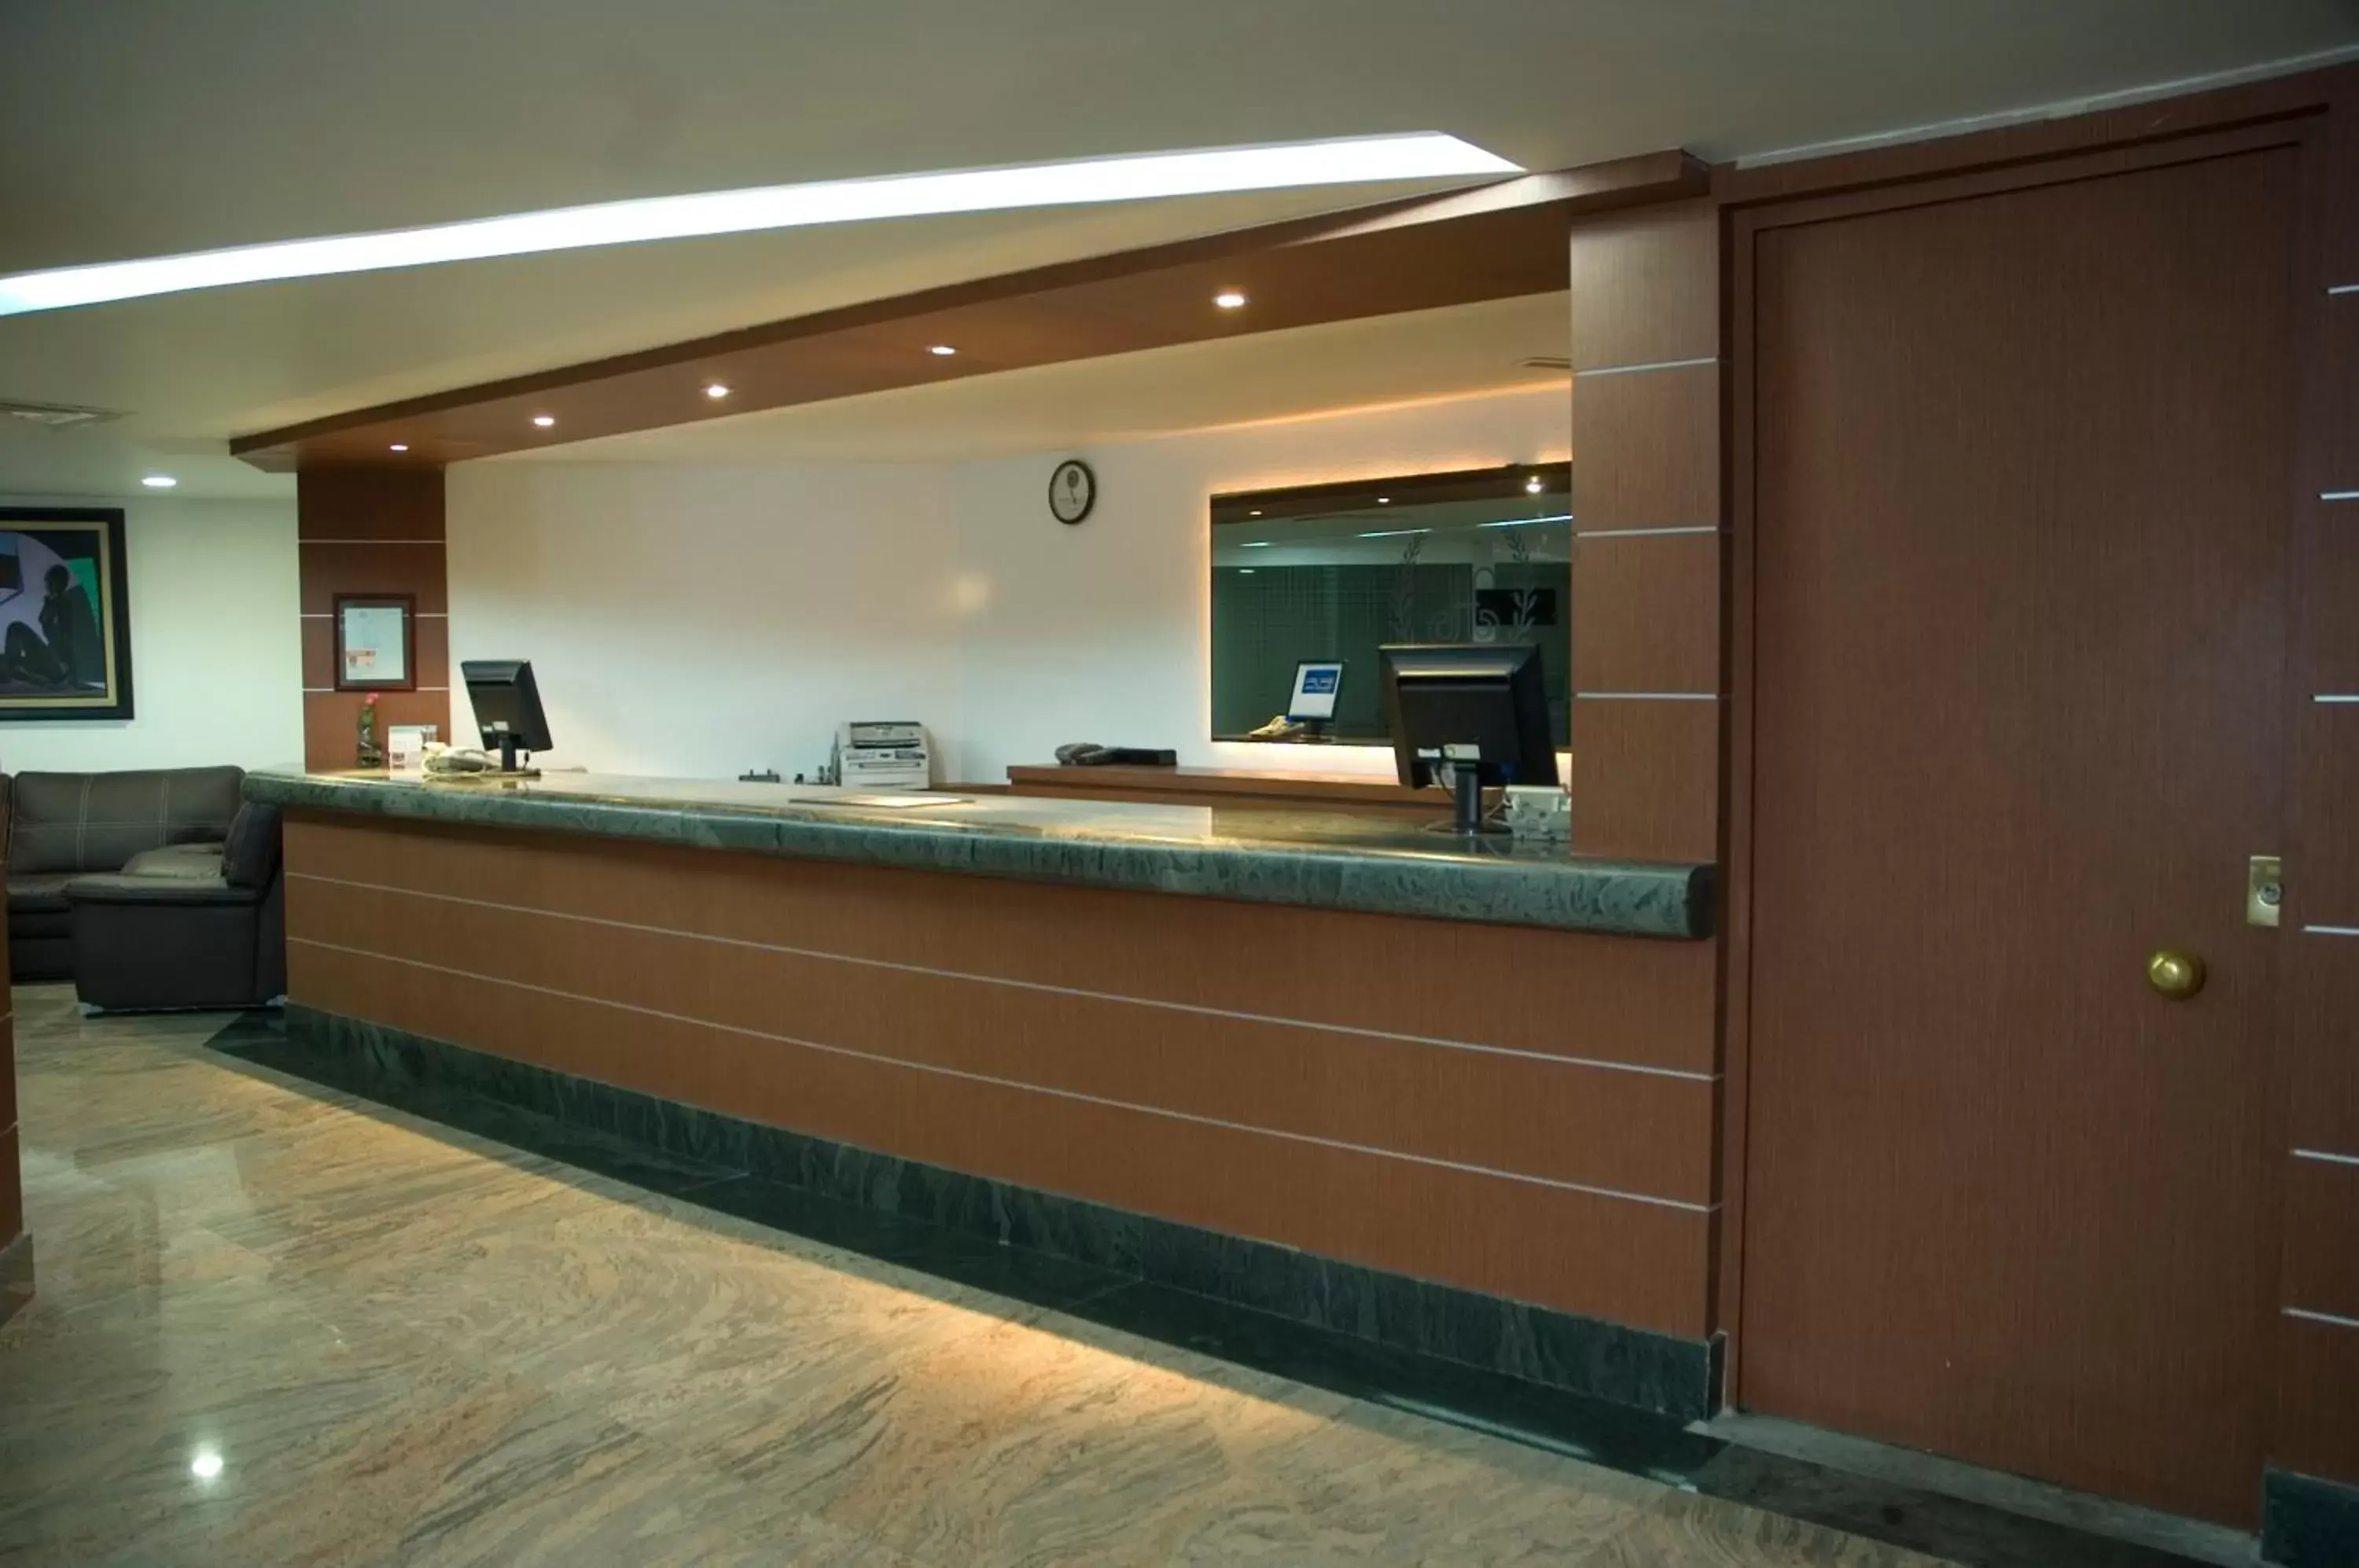 Lobby or reception, Lobby/Reception in Hotel Astor